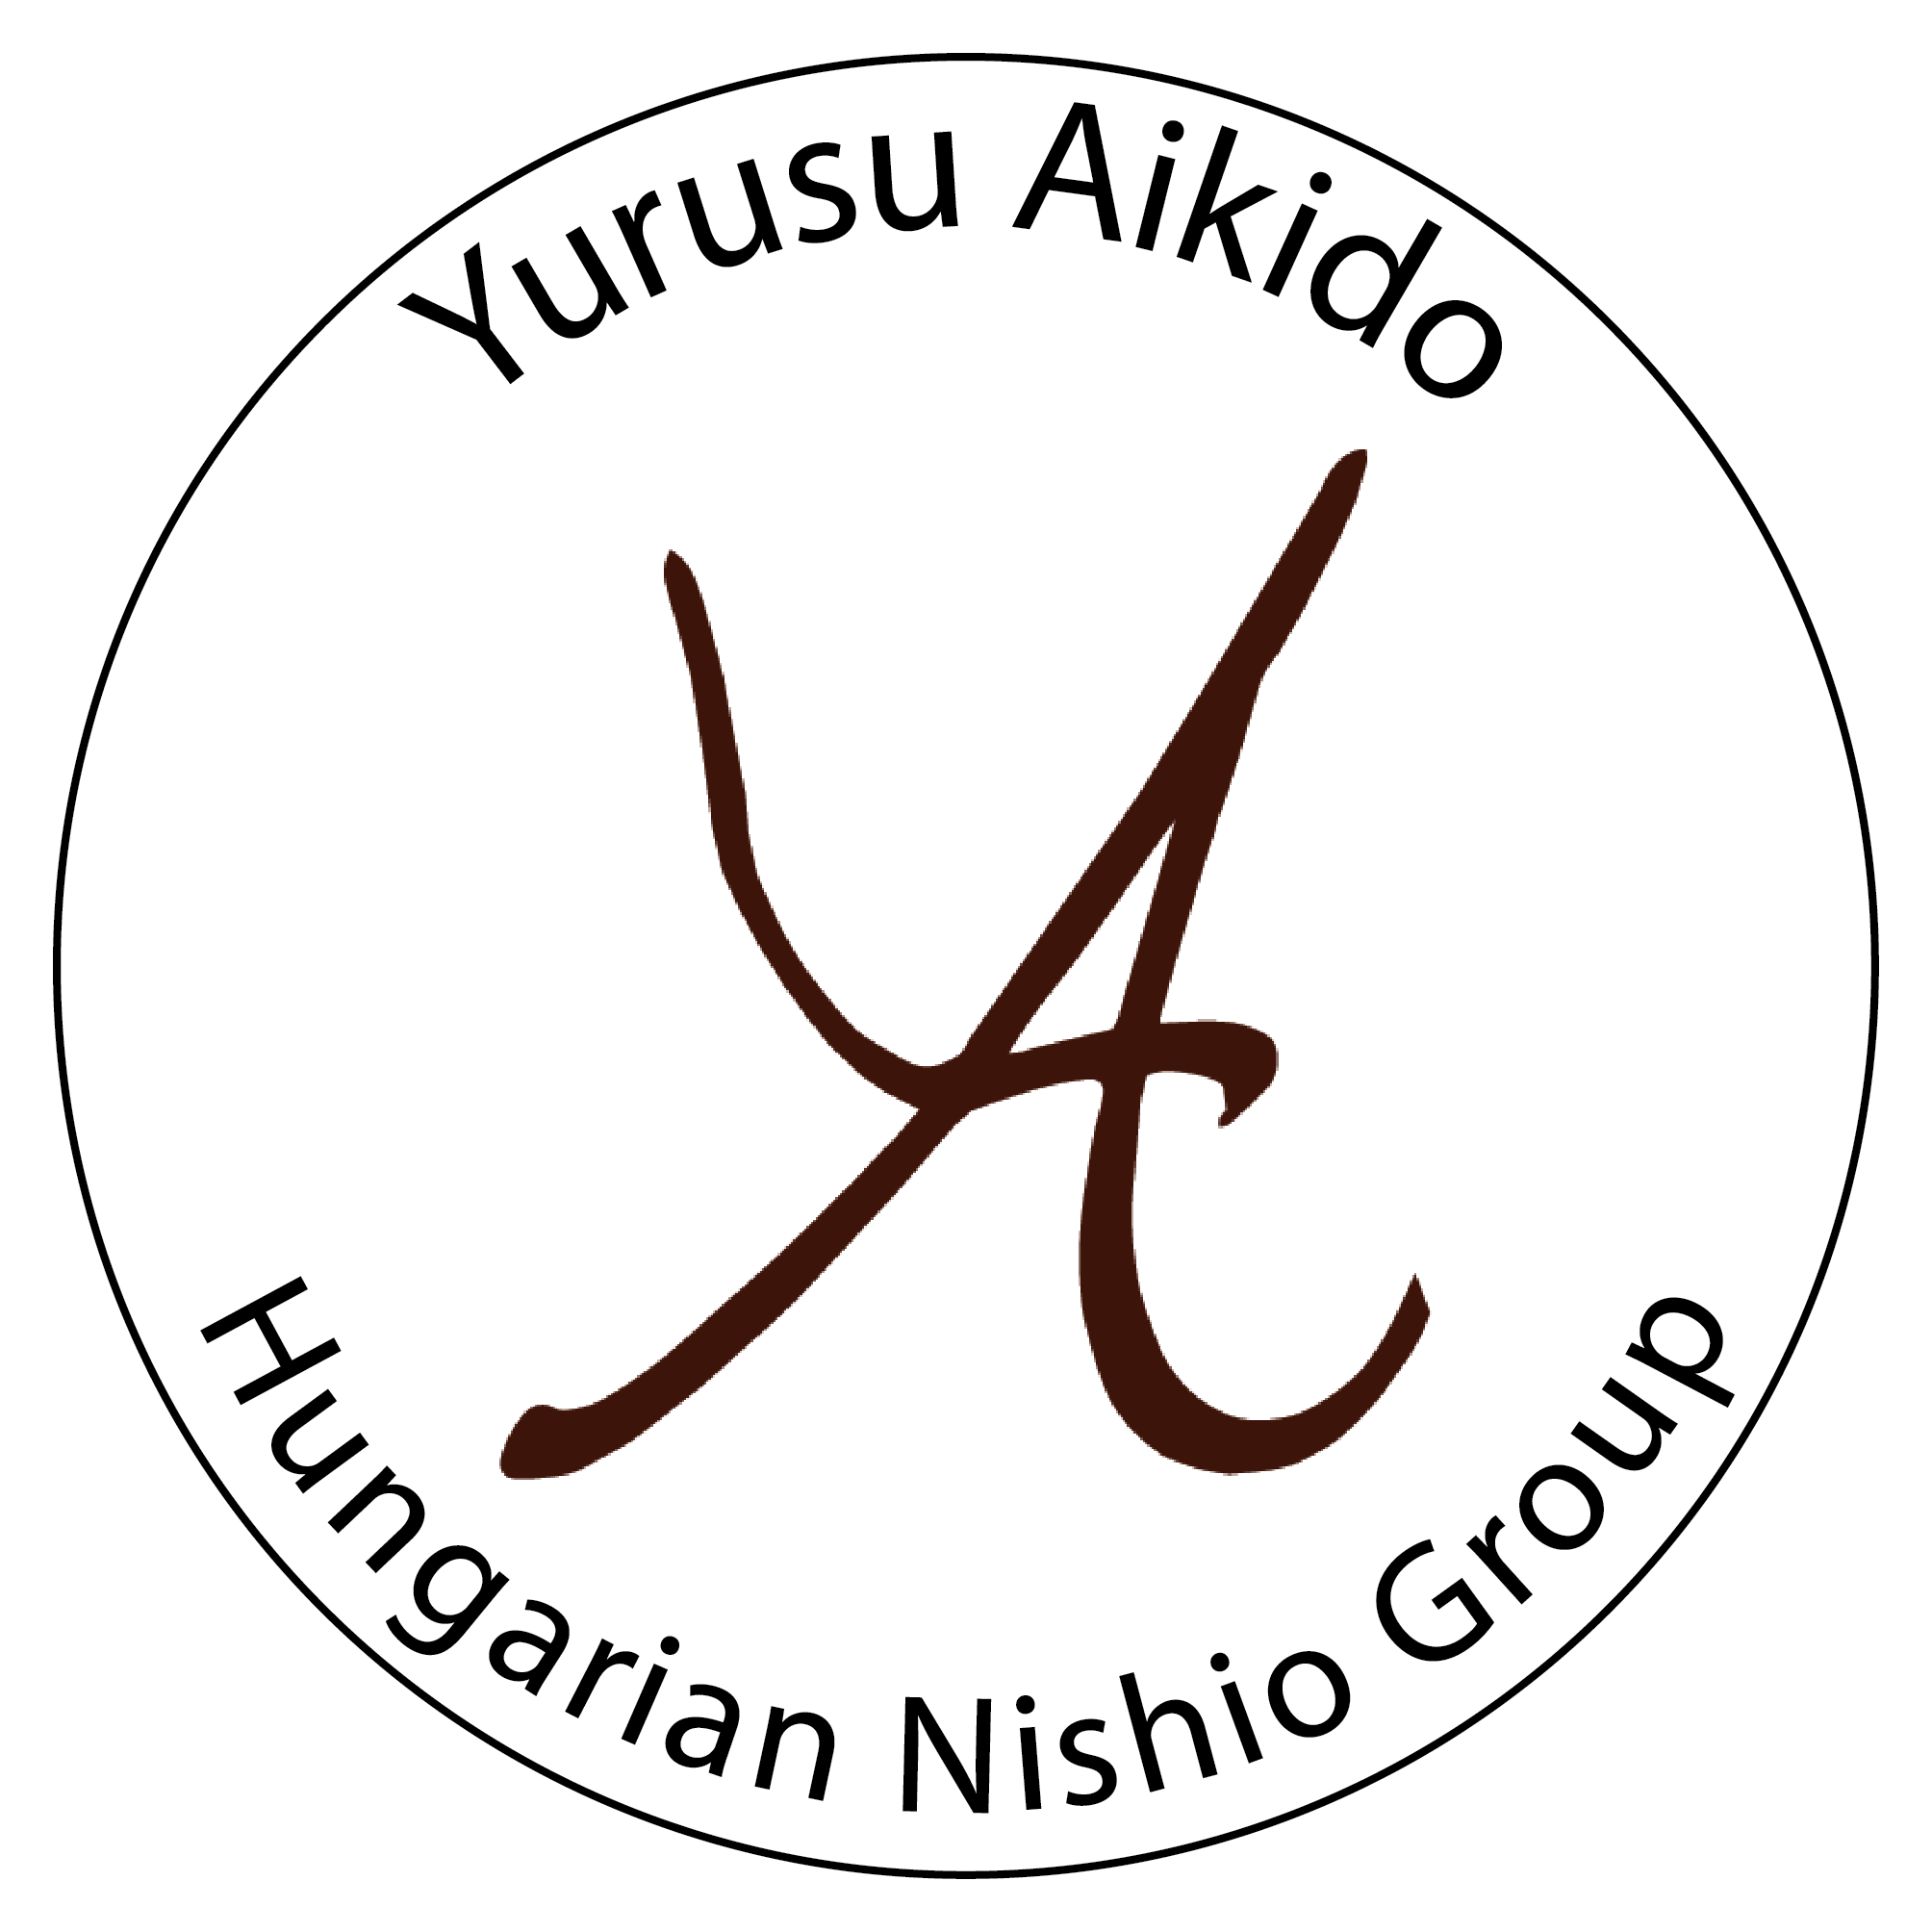 Yurusu aikido dojo image